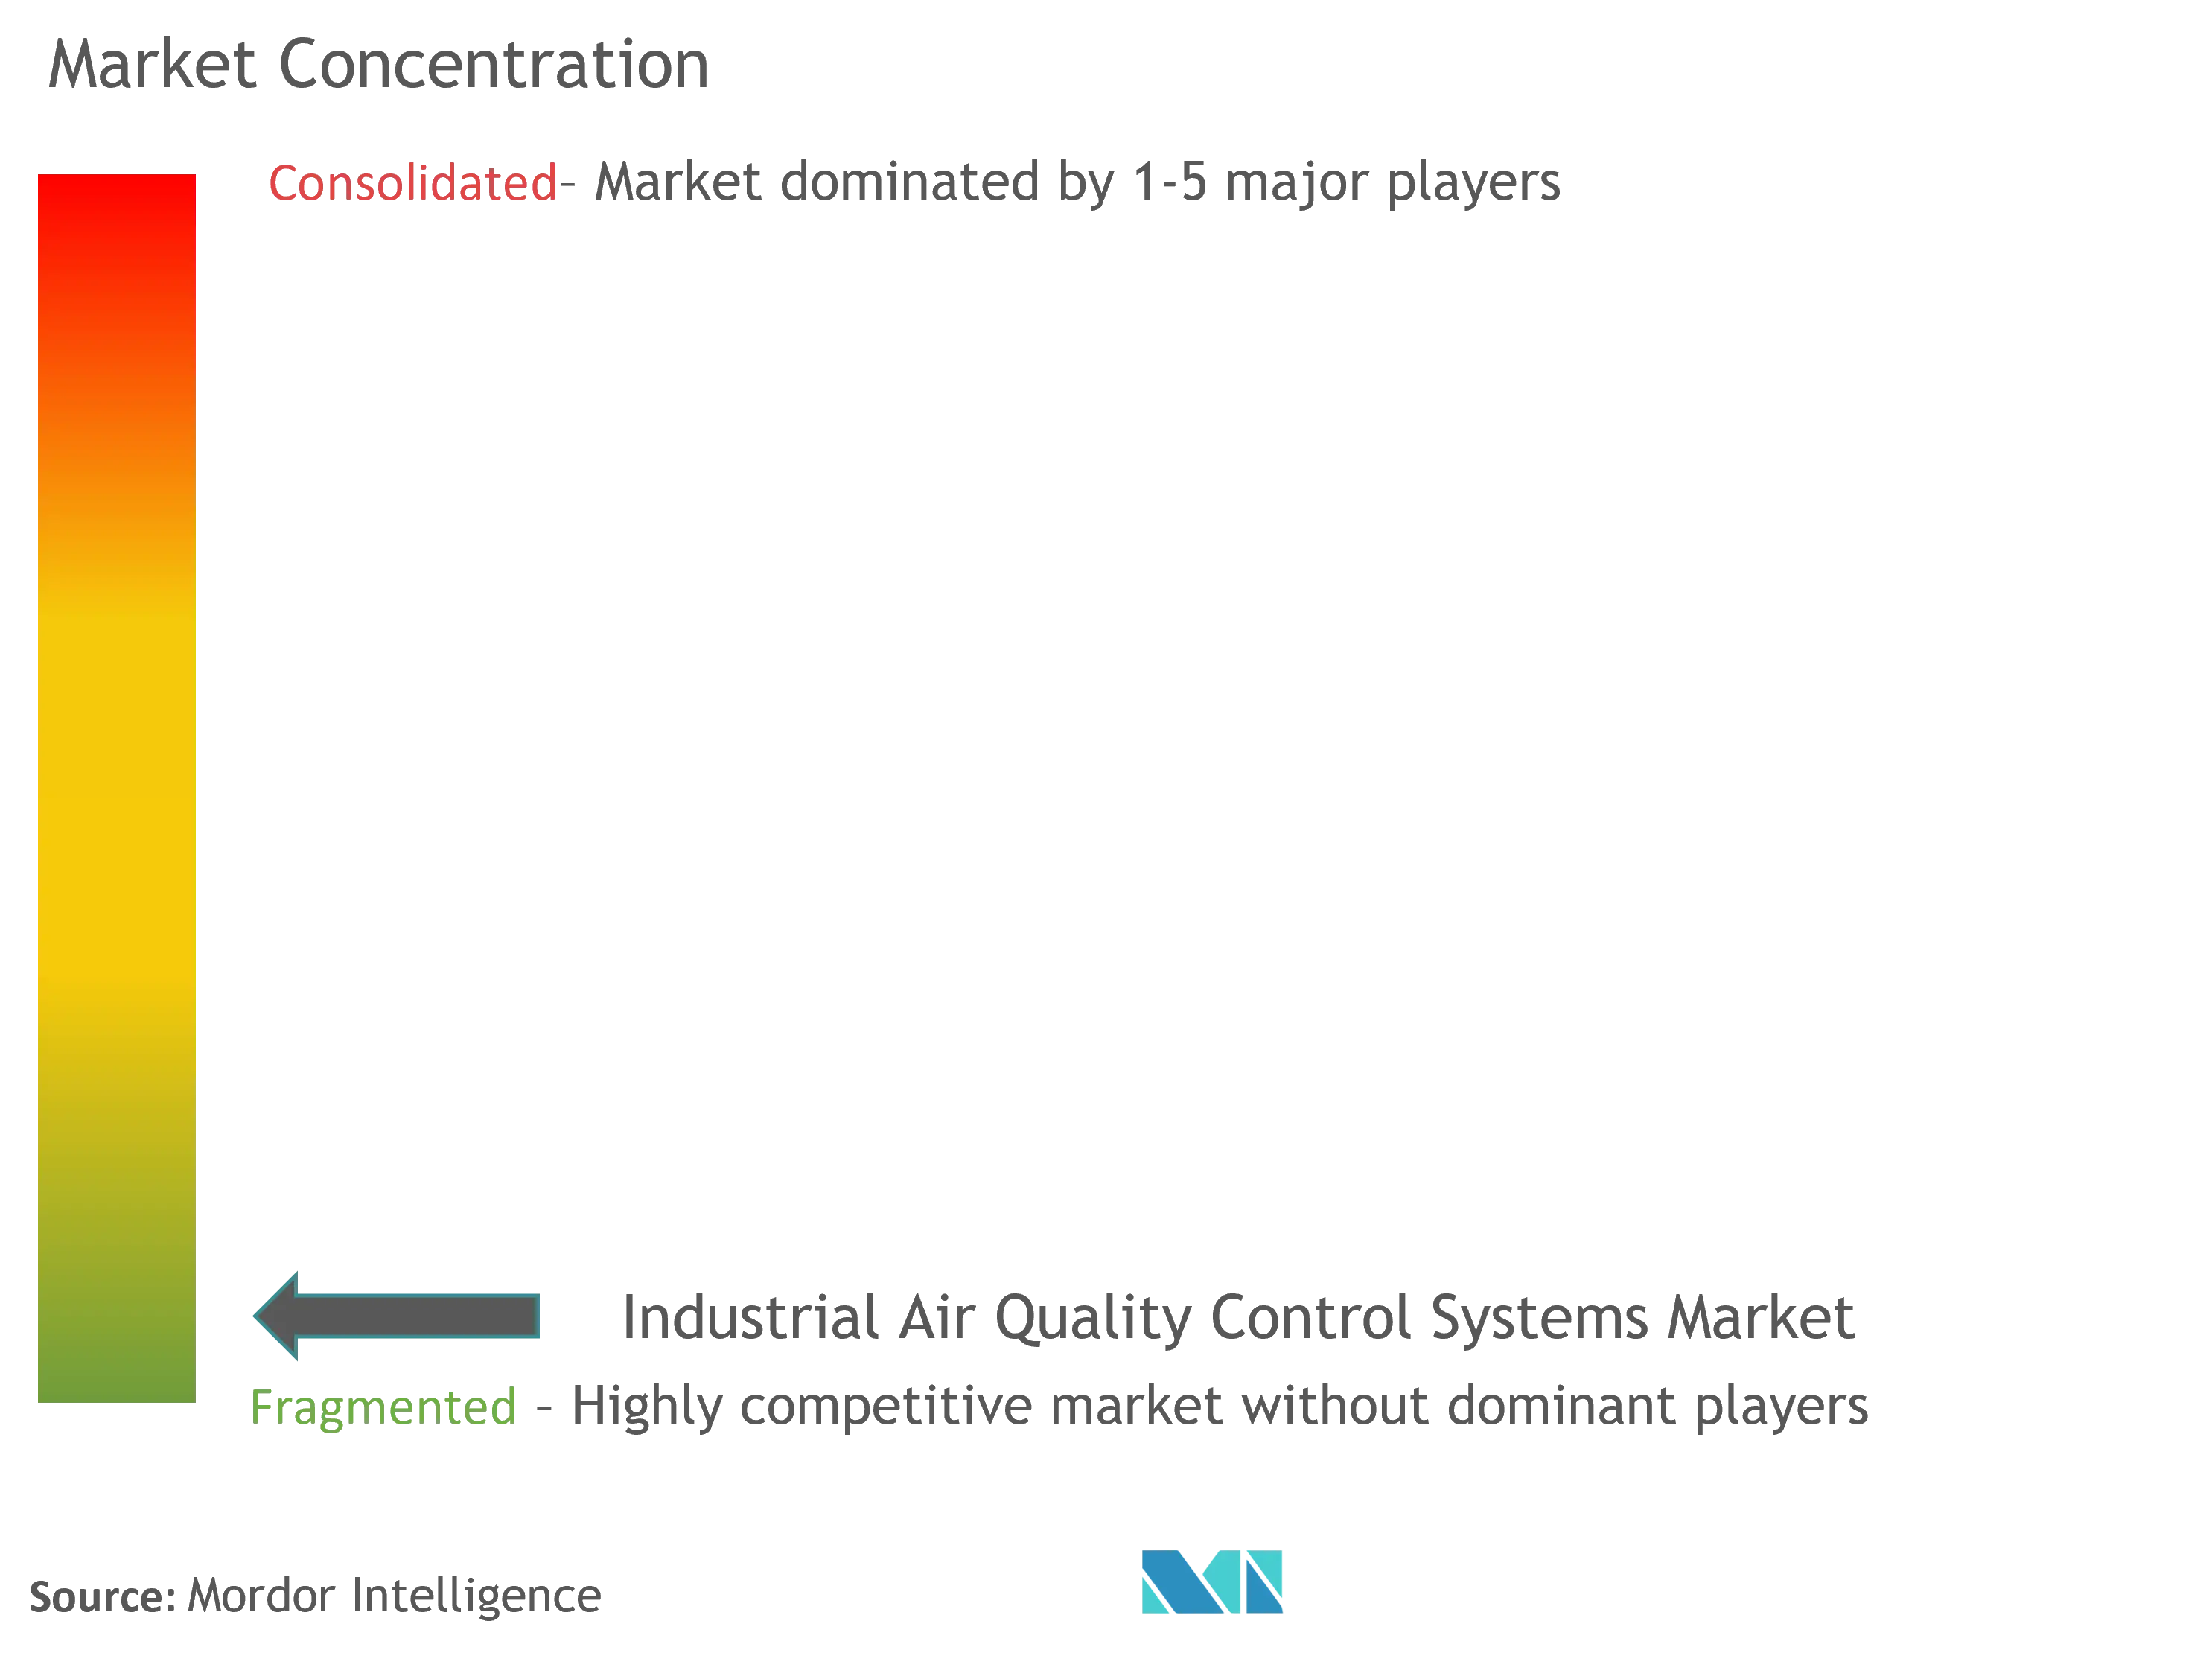 産業用空気品質管理システム市場集中度